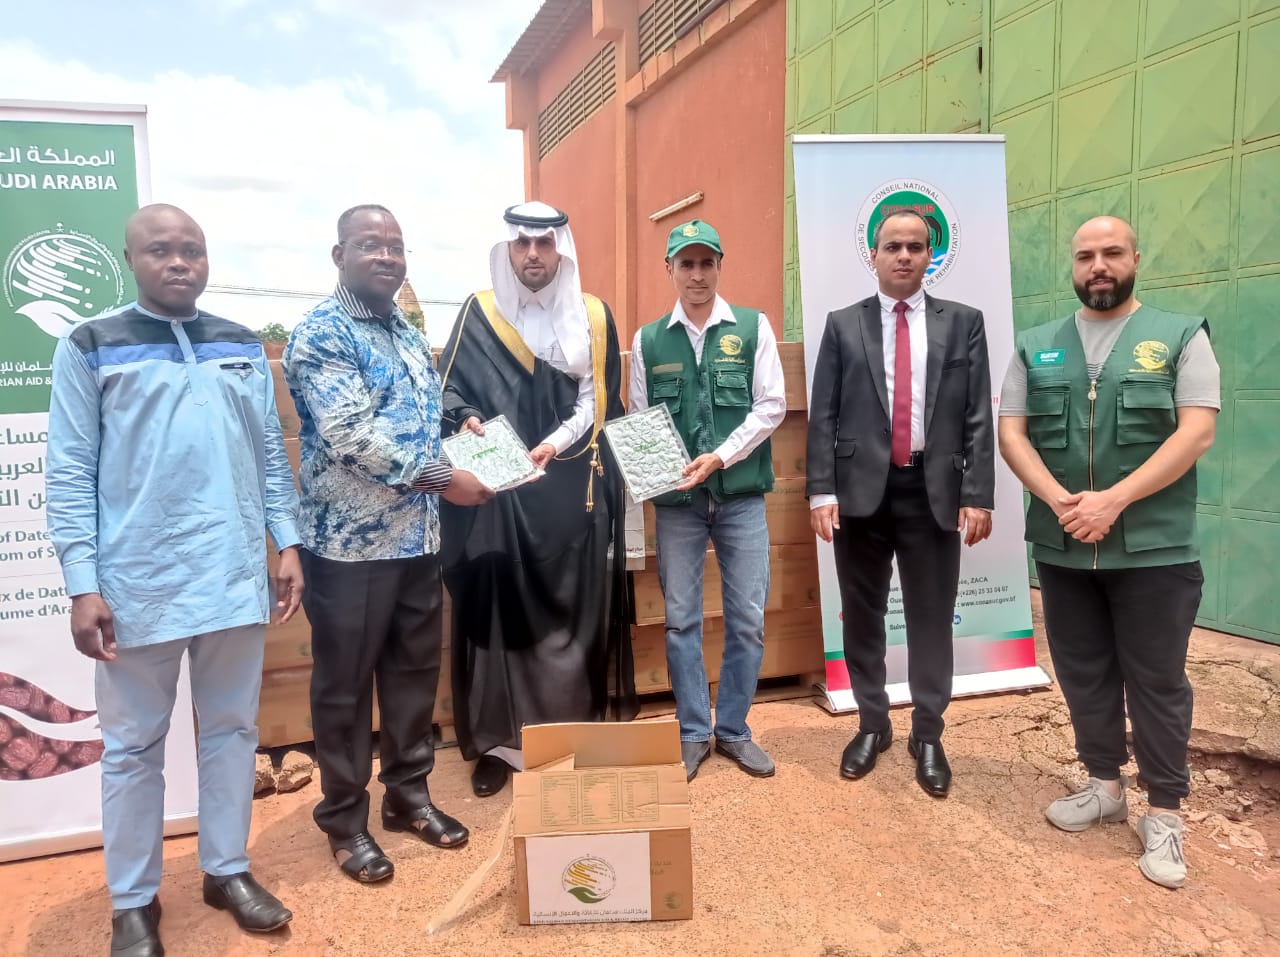 Solidarité : L’Arabie saoudite offre 40 tonnes de dattes alimentaires aux populations vulnérables du Burkina Faso